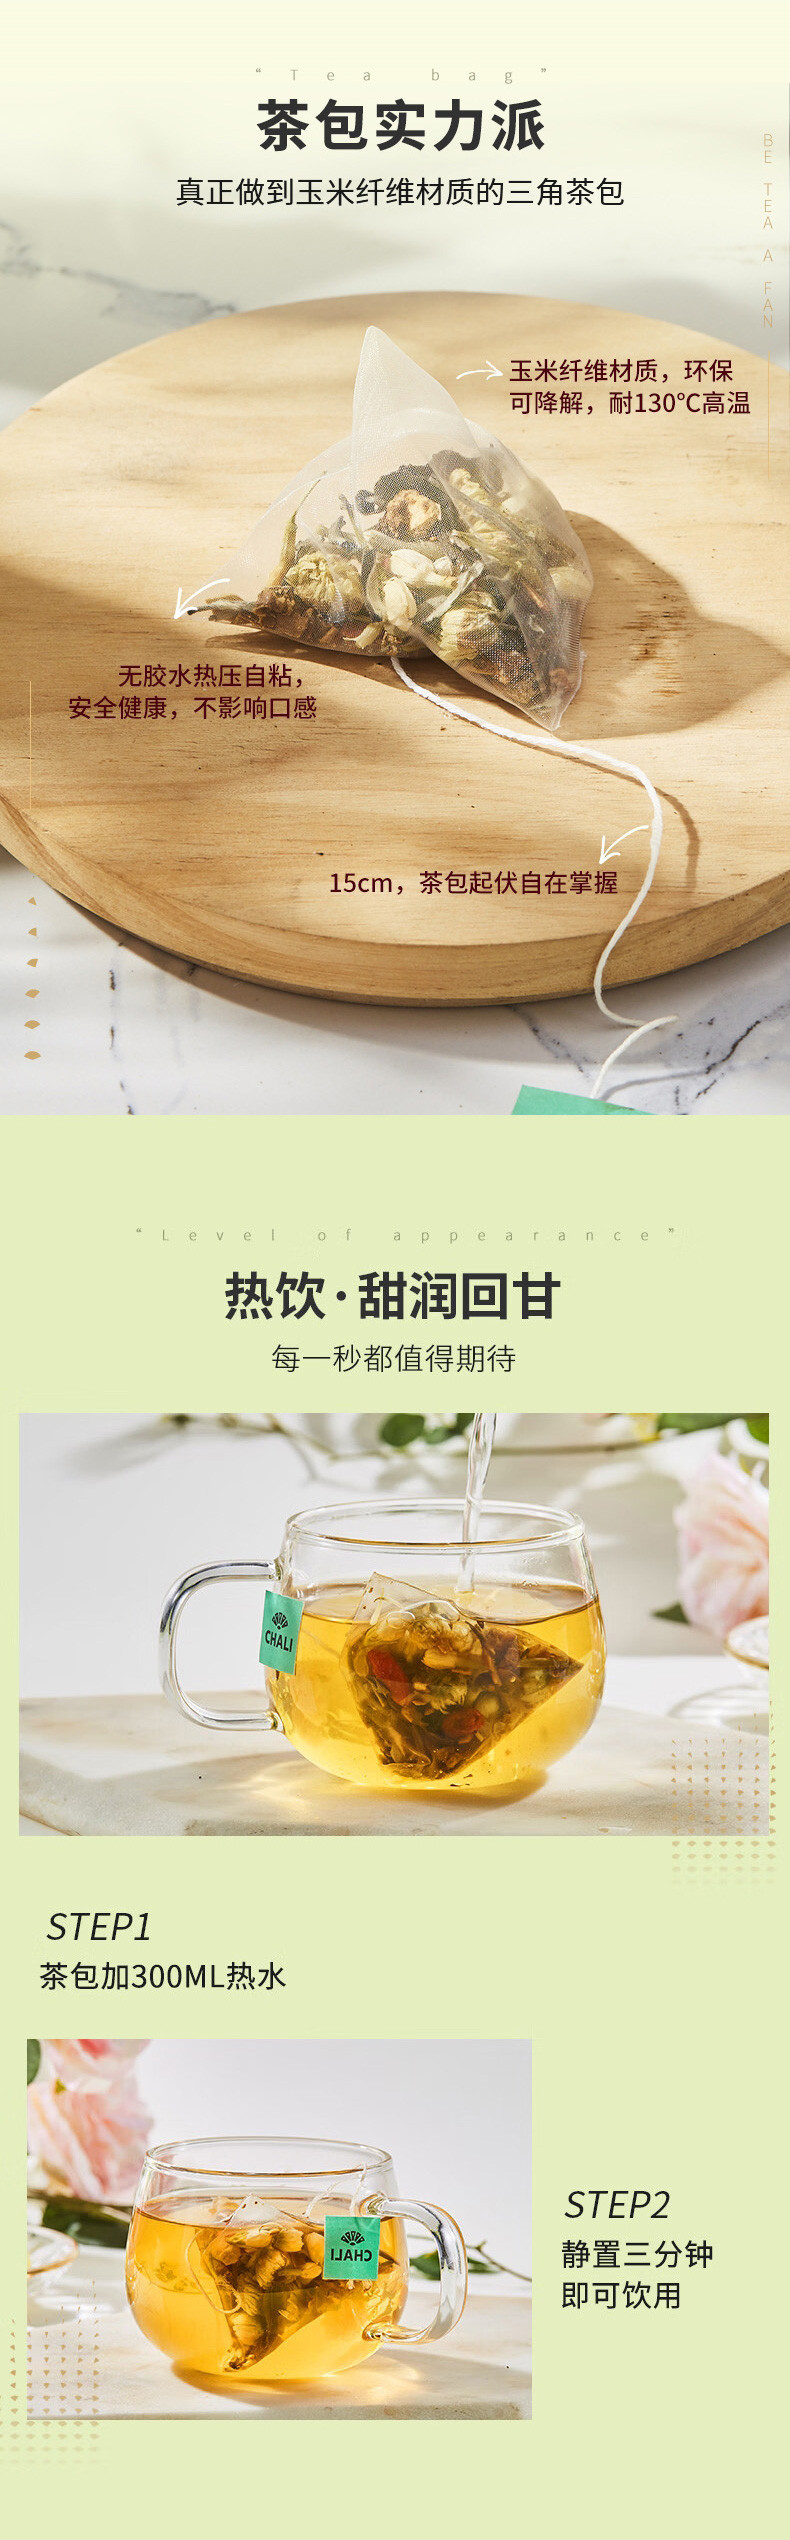 CHALI 茶里罗汉果白茶盒装45g养生茶包